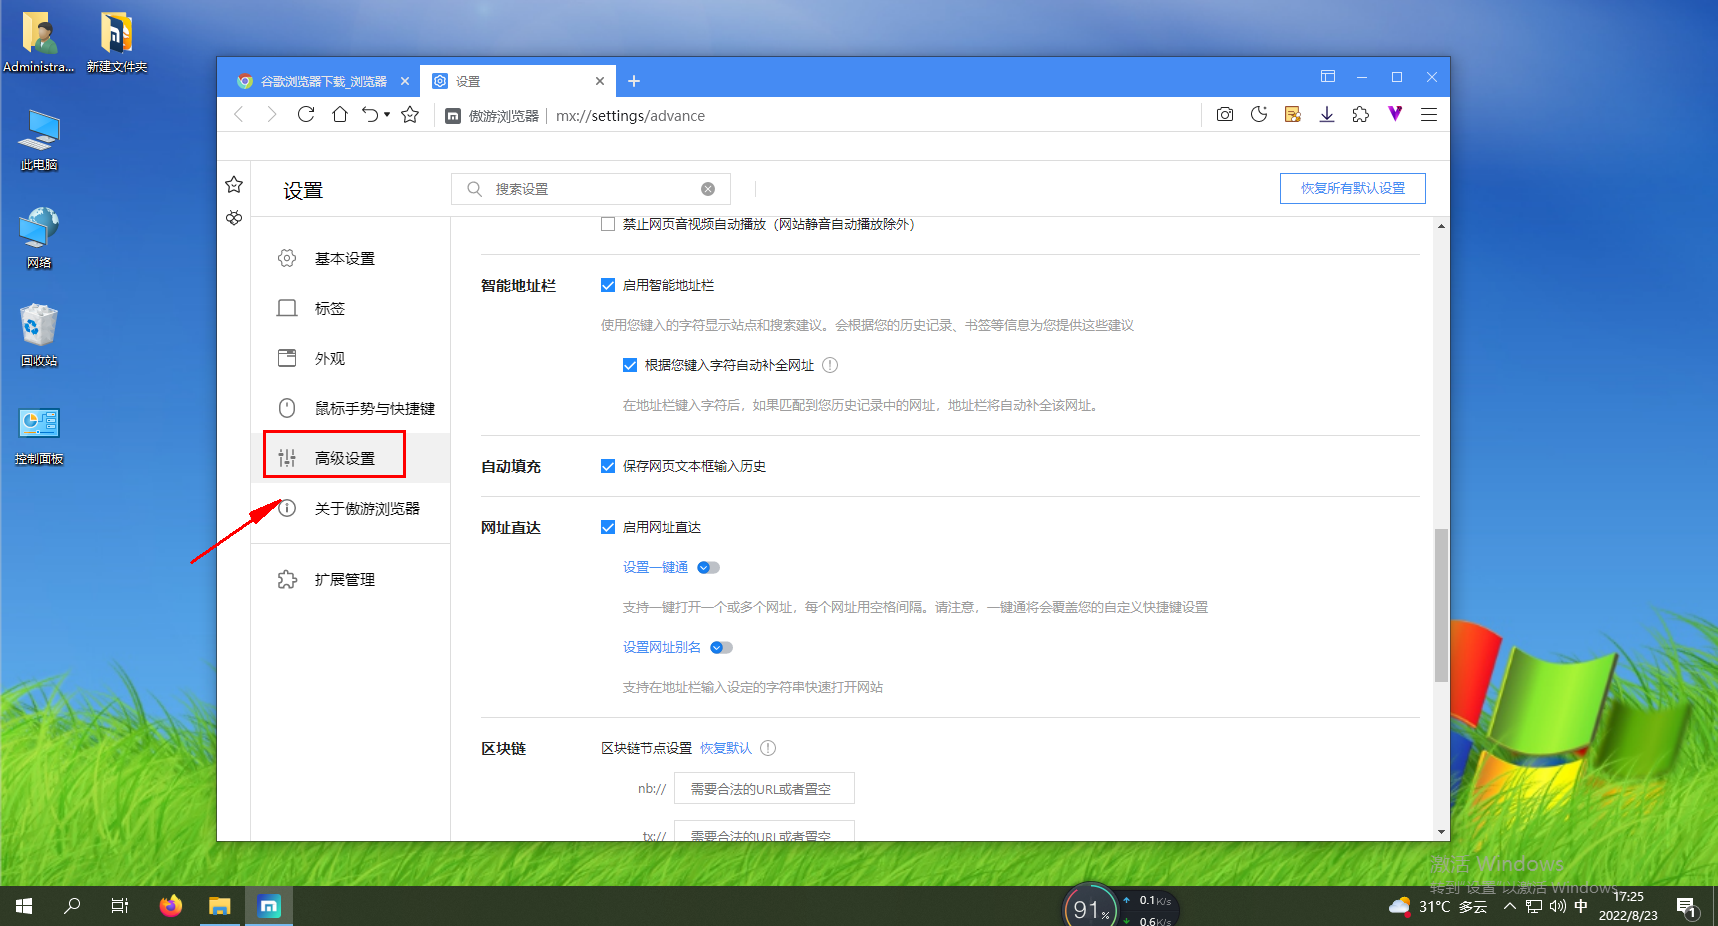 傲游浏览器如何开启网址自动补全功能